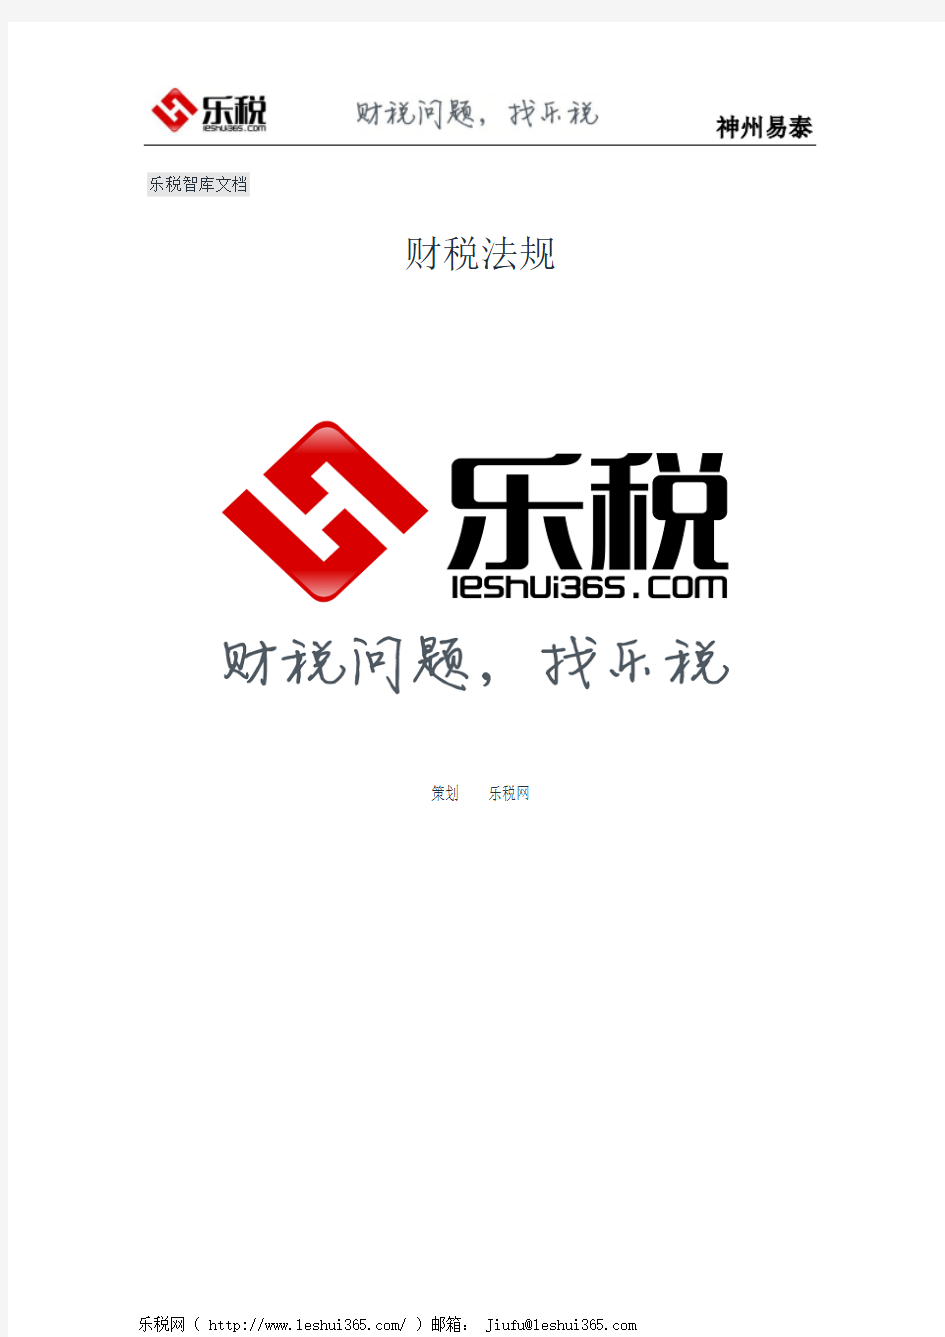 上海市地方税务局关于个人所得税若干政策问题的通知